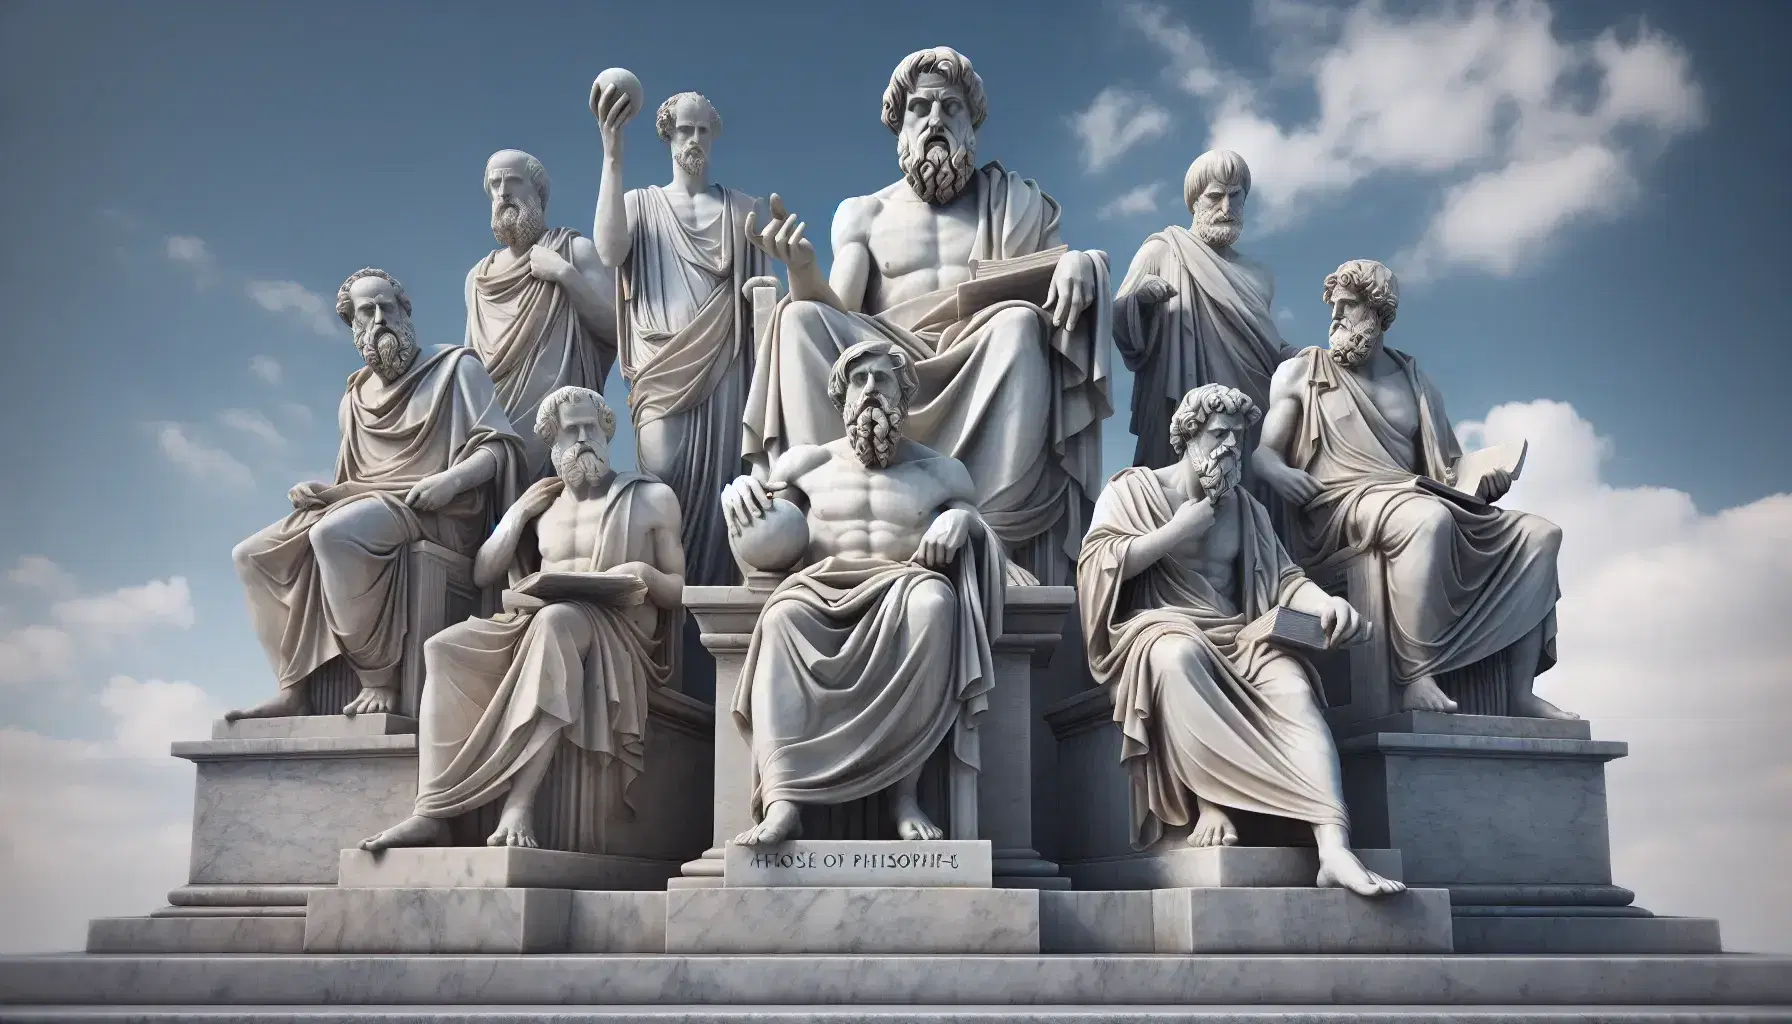 Estatuas de mármol de filósofos griegos antiguos en semicírculo, con cielo azul de fondo, destacando detalles como papiro, libro y esfera en sus manos.